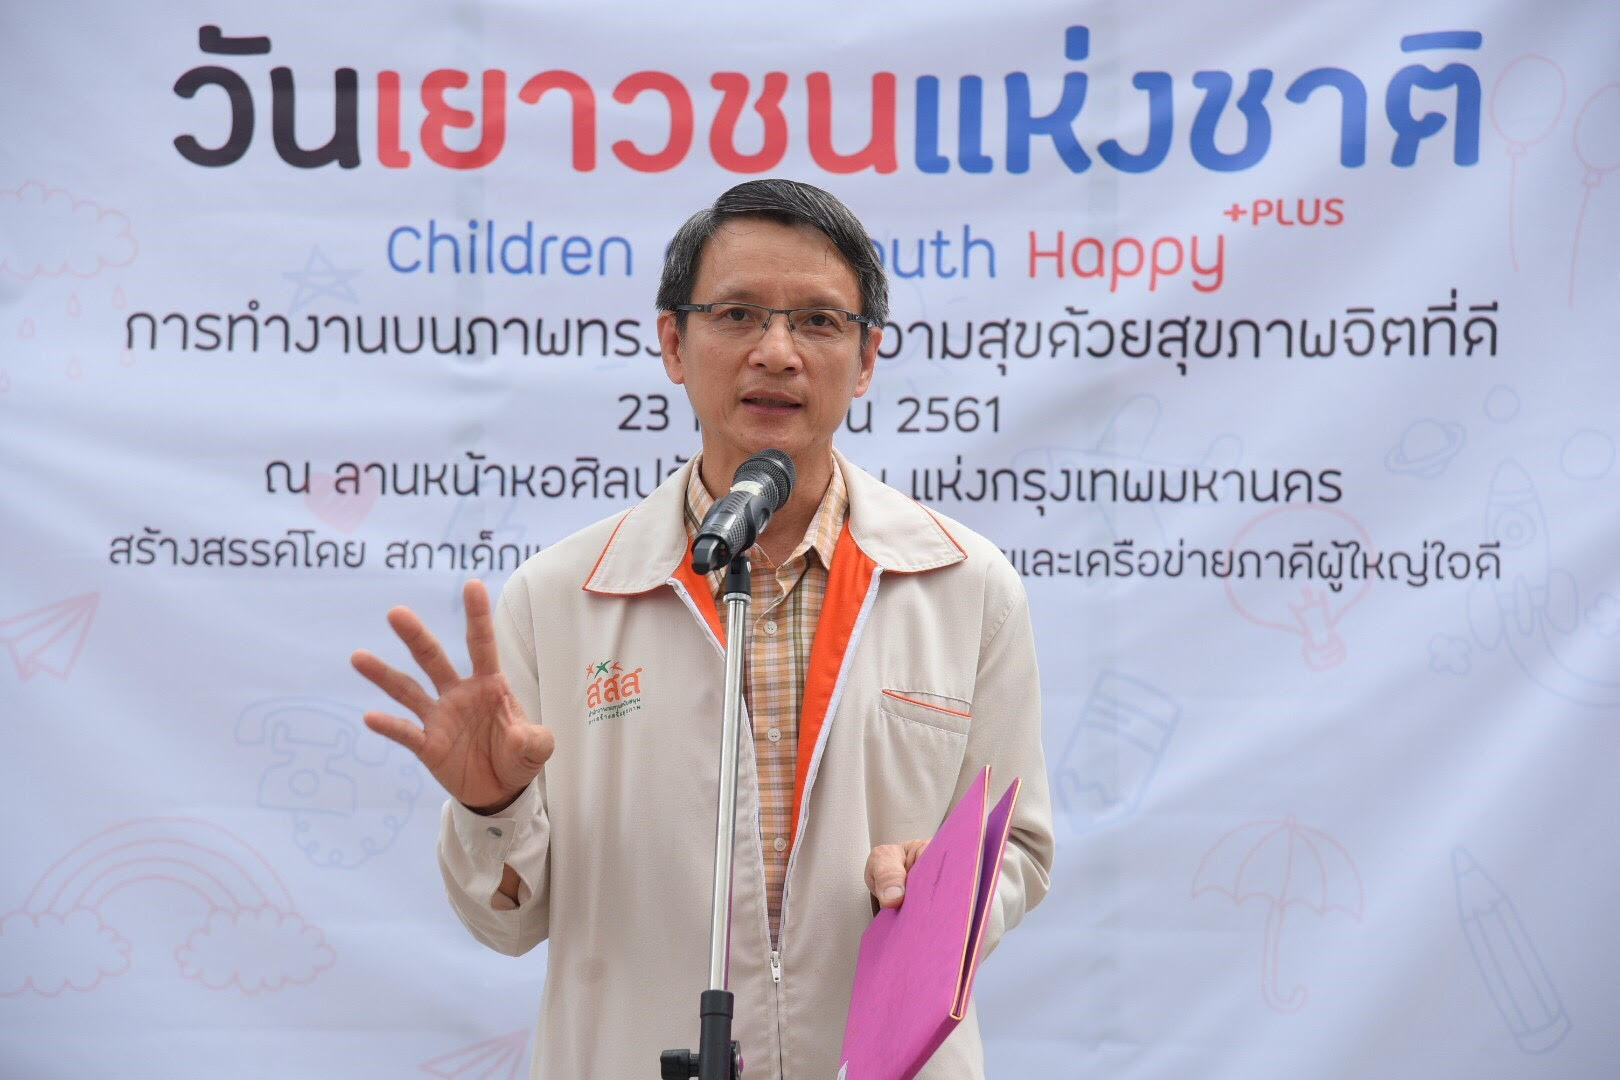 สะท้อนสุขภาพจิตเด็ก-เยาวชน สร้างสังคมใส่ใจคนรอบตัว thaihealth